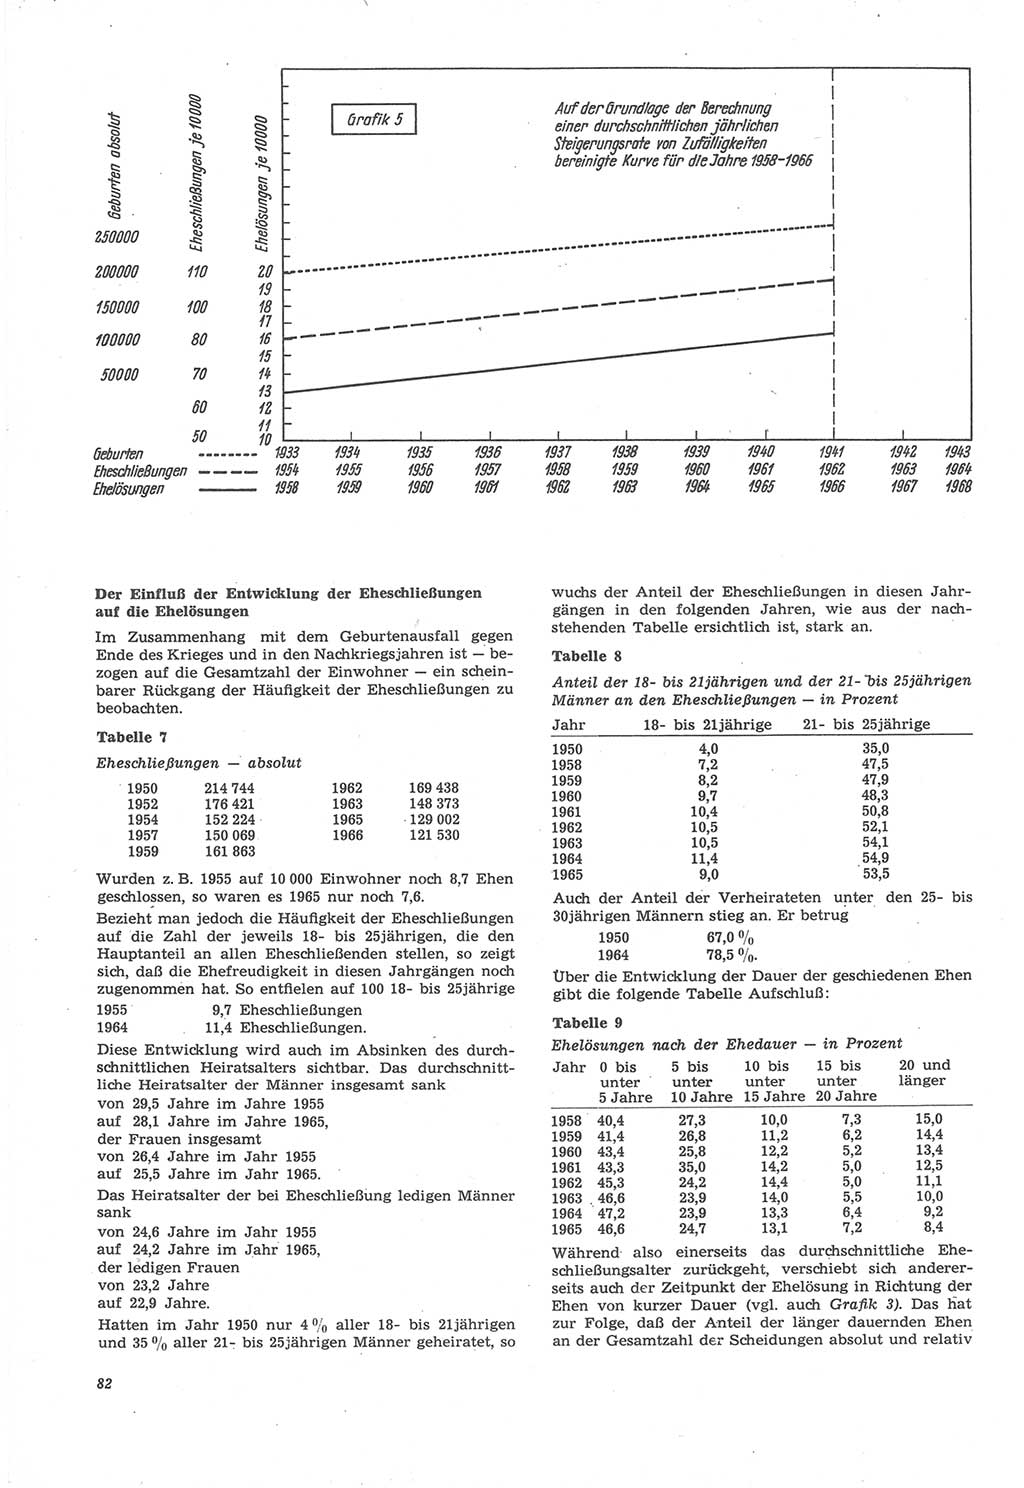 Neue Justiz (NJ), Zeitschrift für Recht und Rechtswissenschaft [Deutsche Demokratische Republik (DDR)], 22. Jahrgang 1968, Seite 82 (NJ DDR 1968, S. 82)